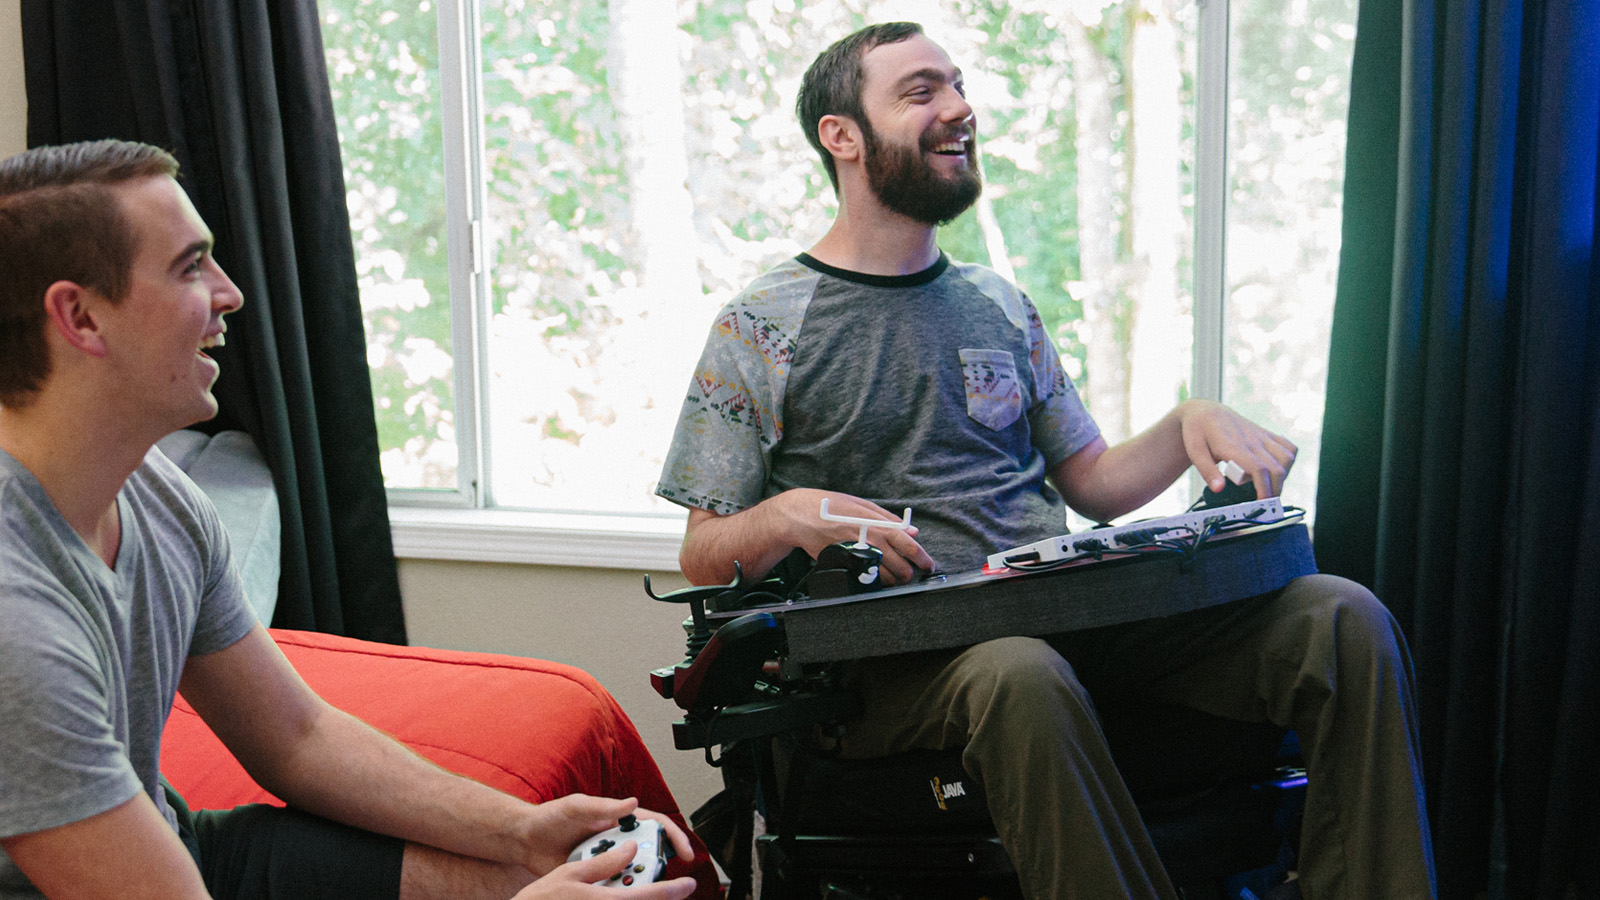 Spencer Allen bruker den dynamiske Xbox-kontrolleren til å spille et spill med en venn.